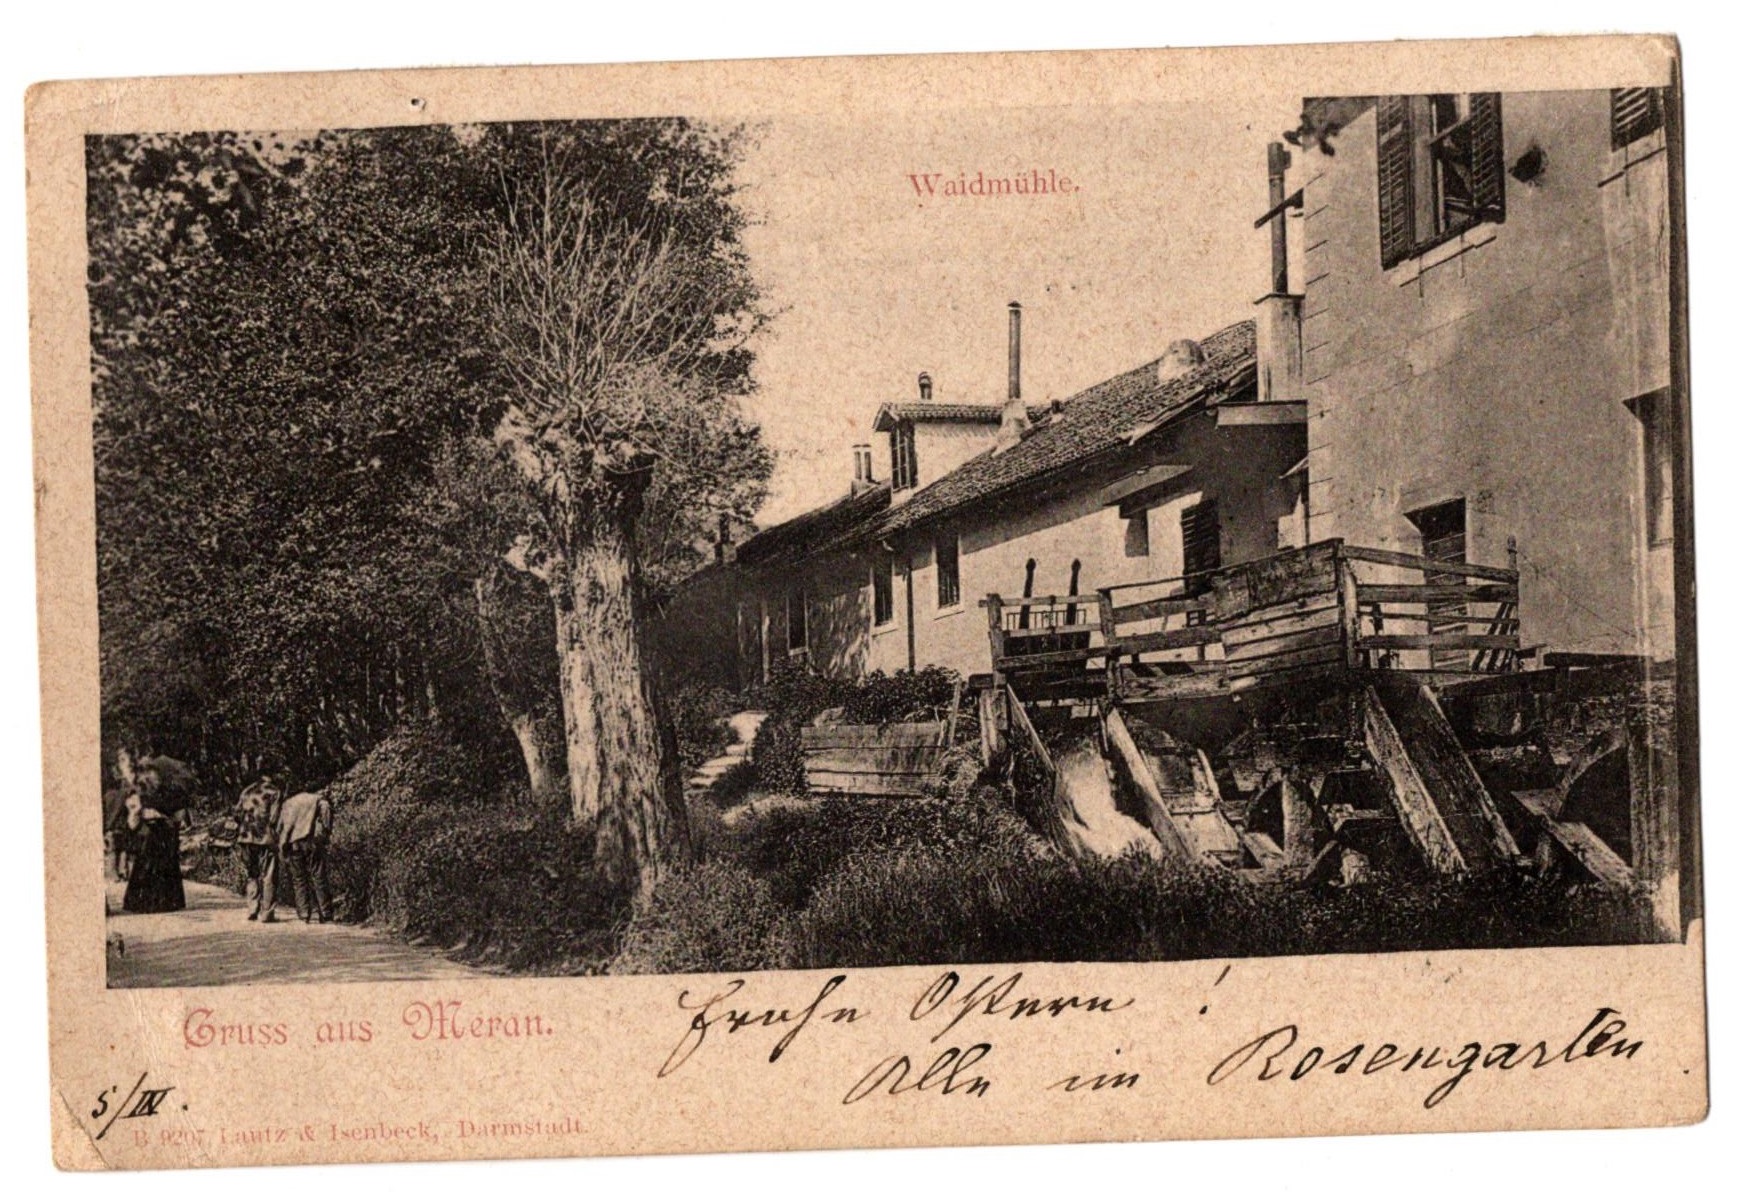 Postkarte mit Fotodarstellung der Waidmühle, Meran